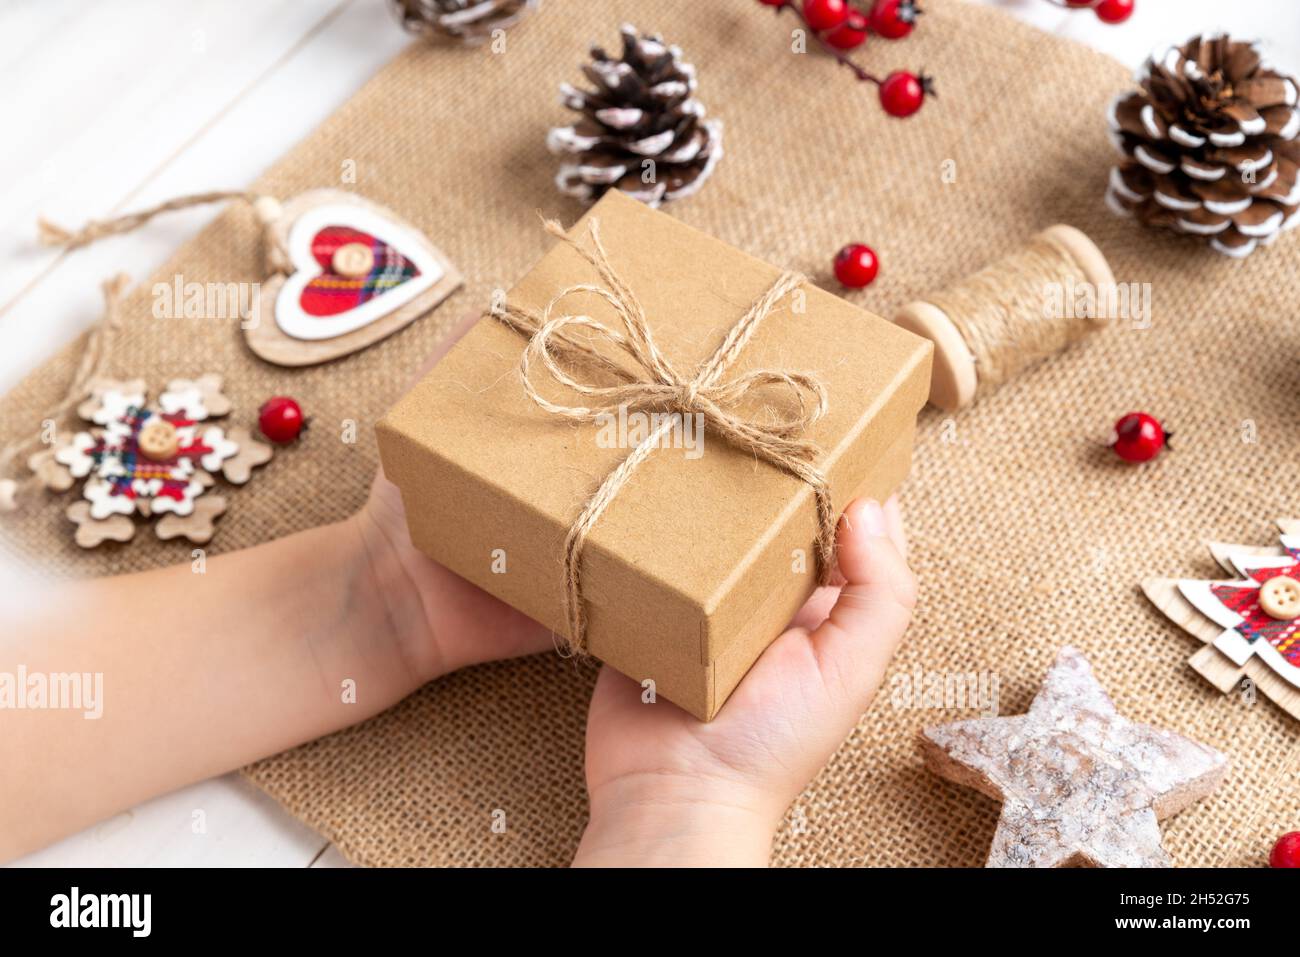 Caja de regalo navideña / Roja / Moño / Navidad 2014 / Adorno / Decoración